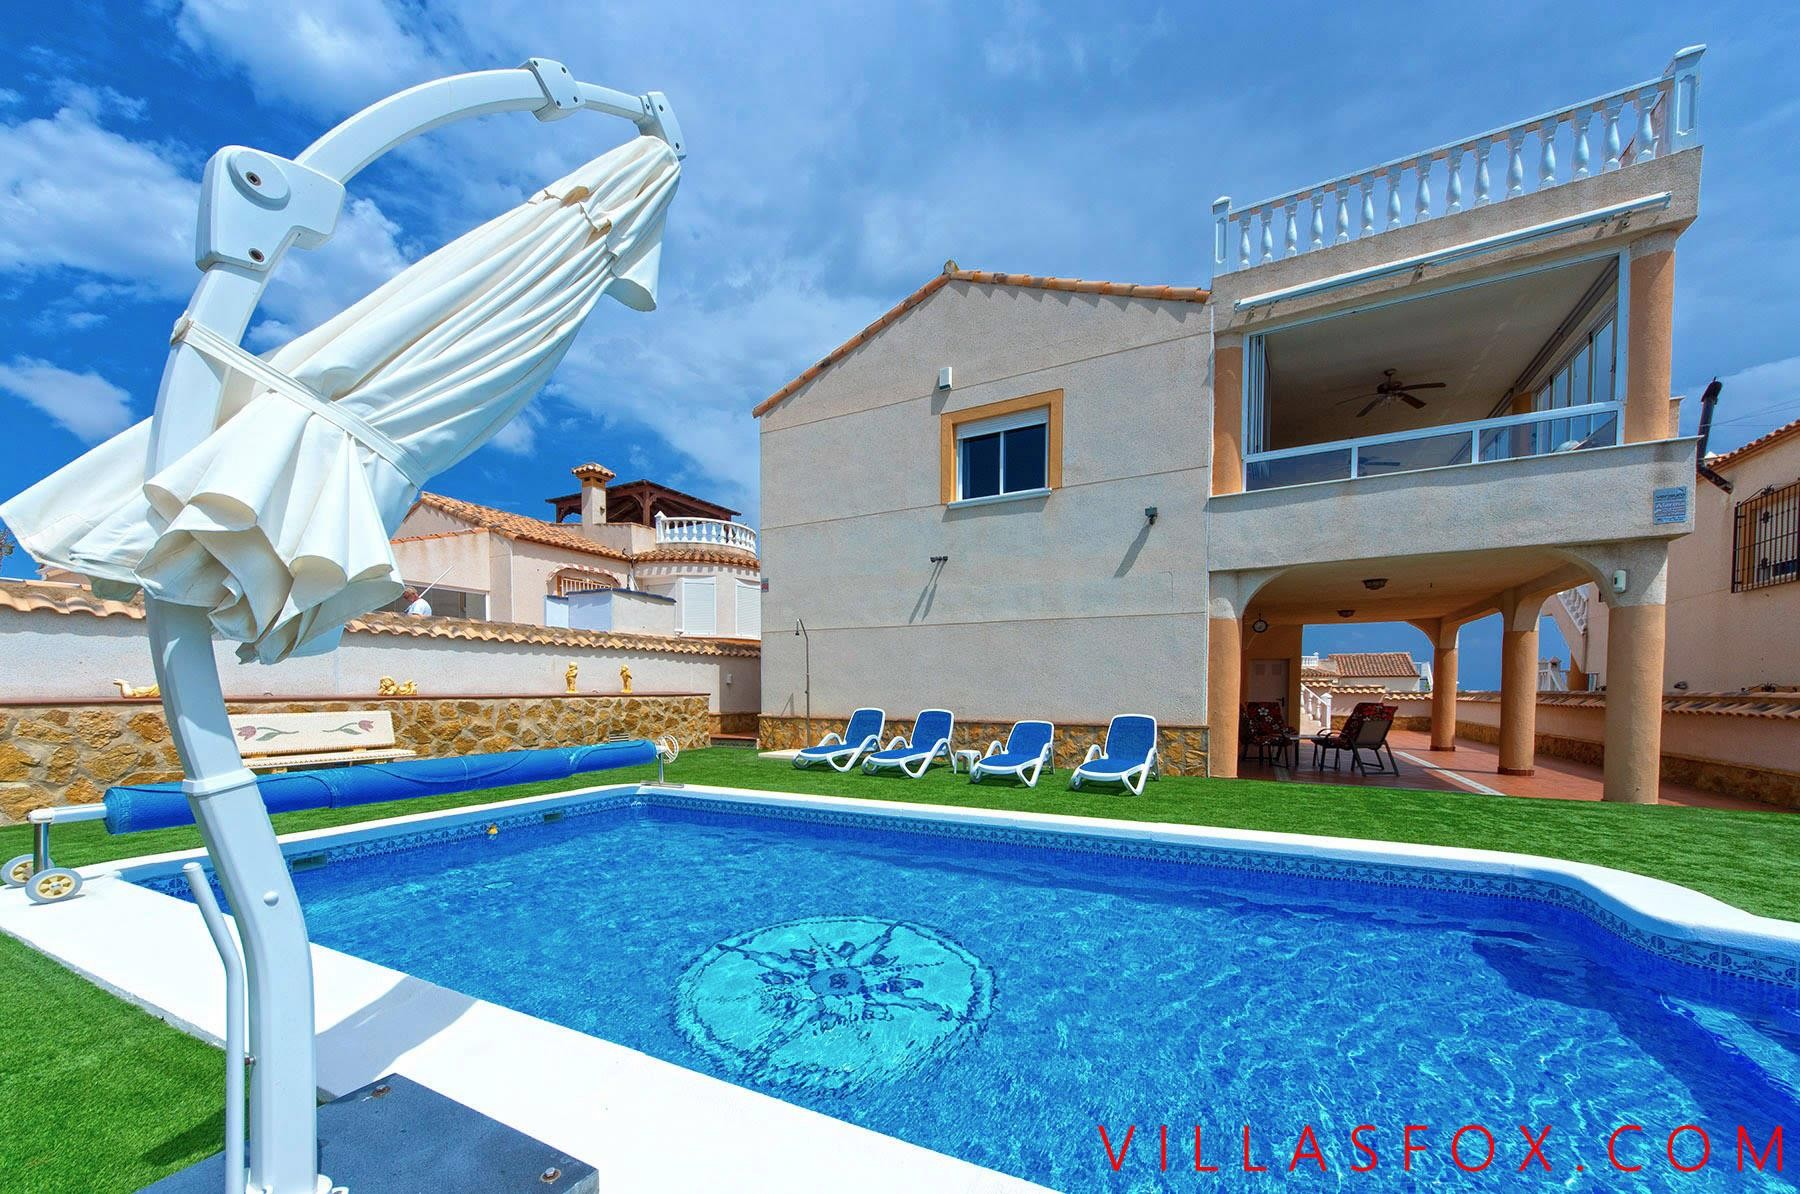 Villa Lakeview Mansions de 4 quartos com vistas incríveis, piscina privativa, garagem